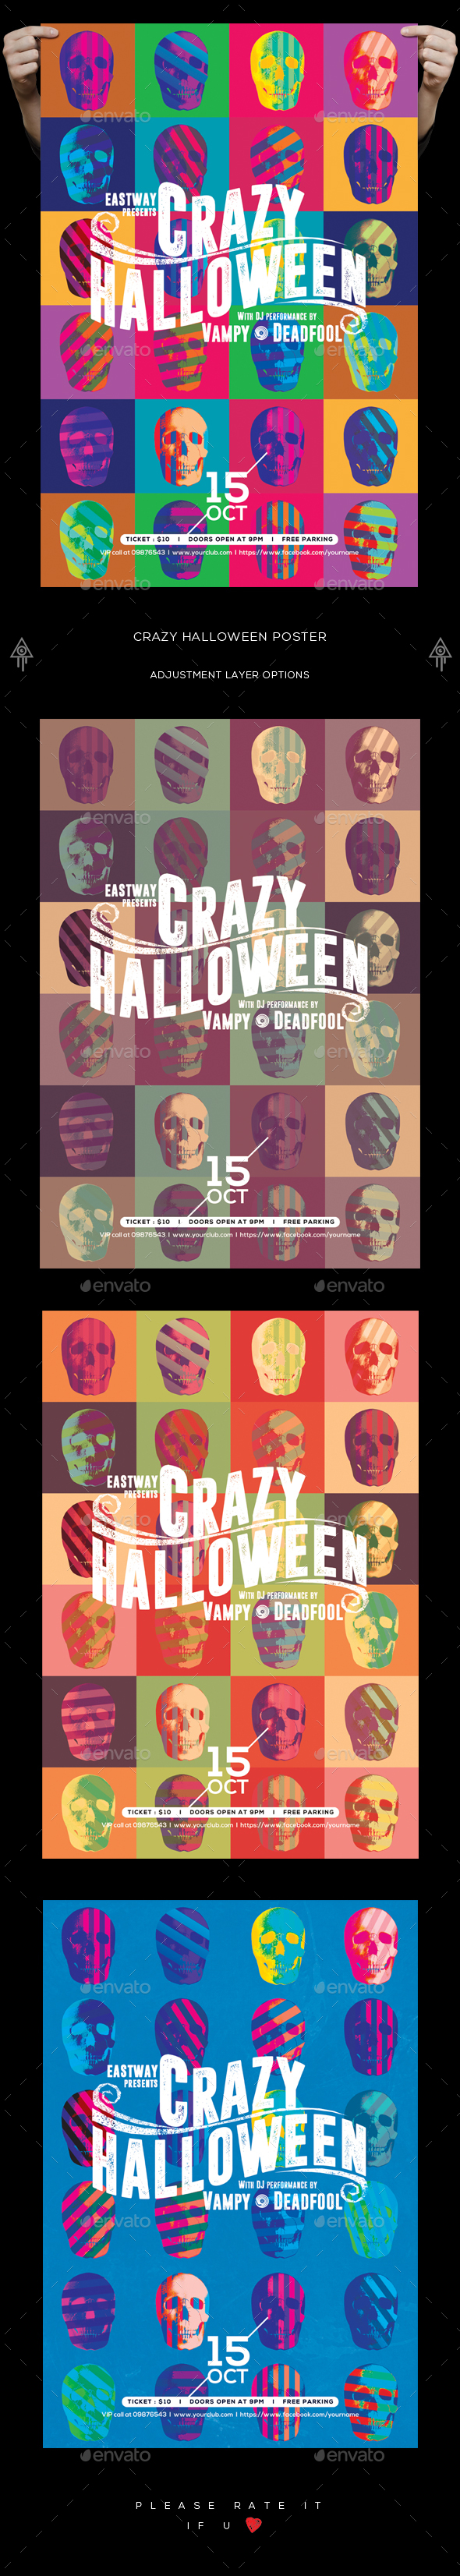 Crazy Halloween Poster / Flyer